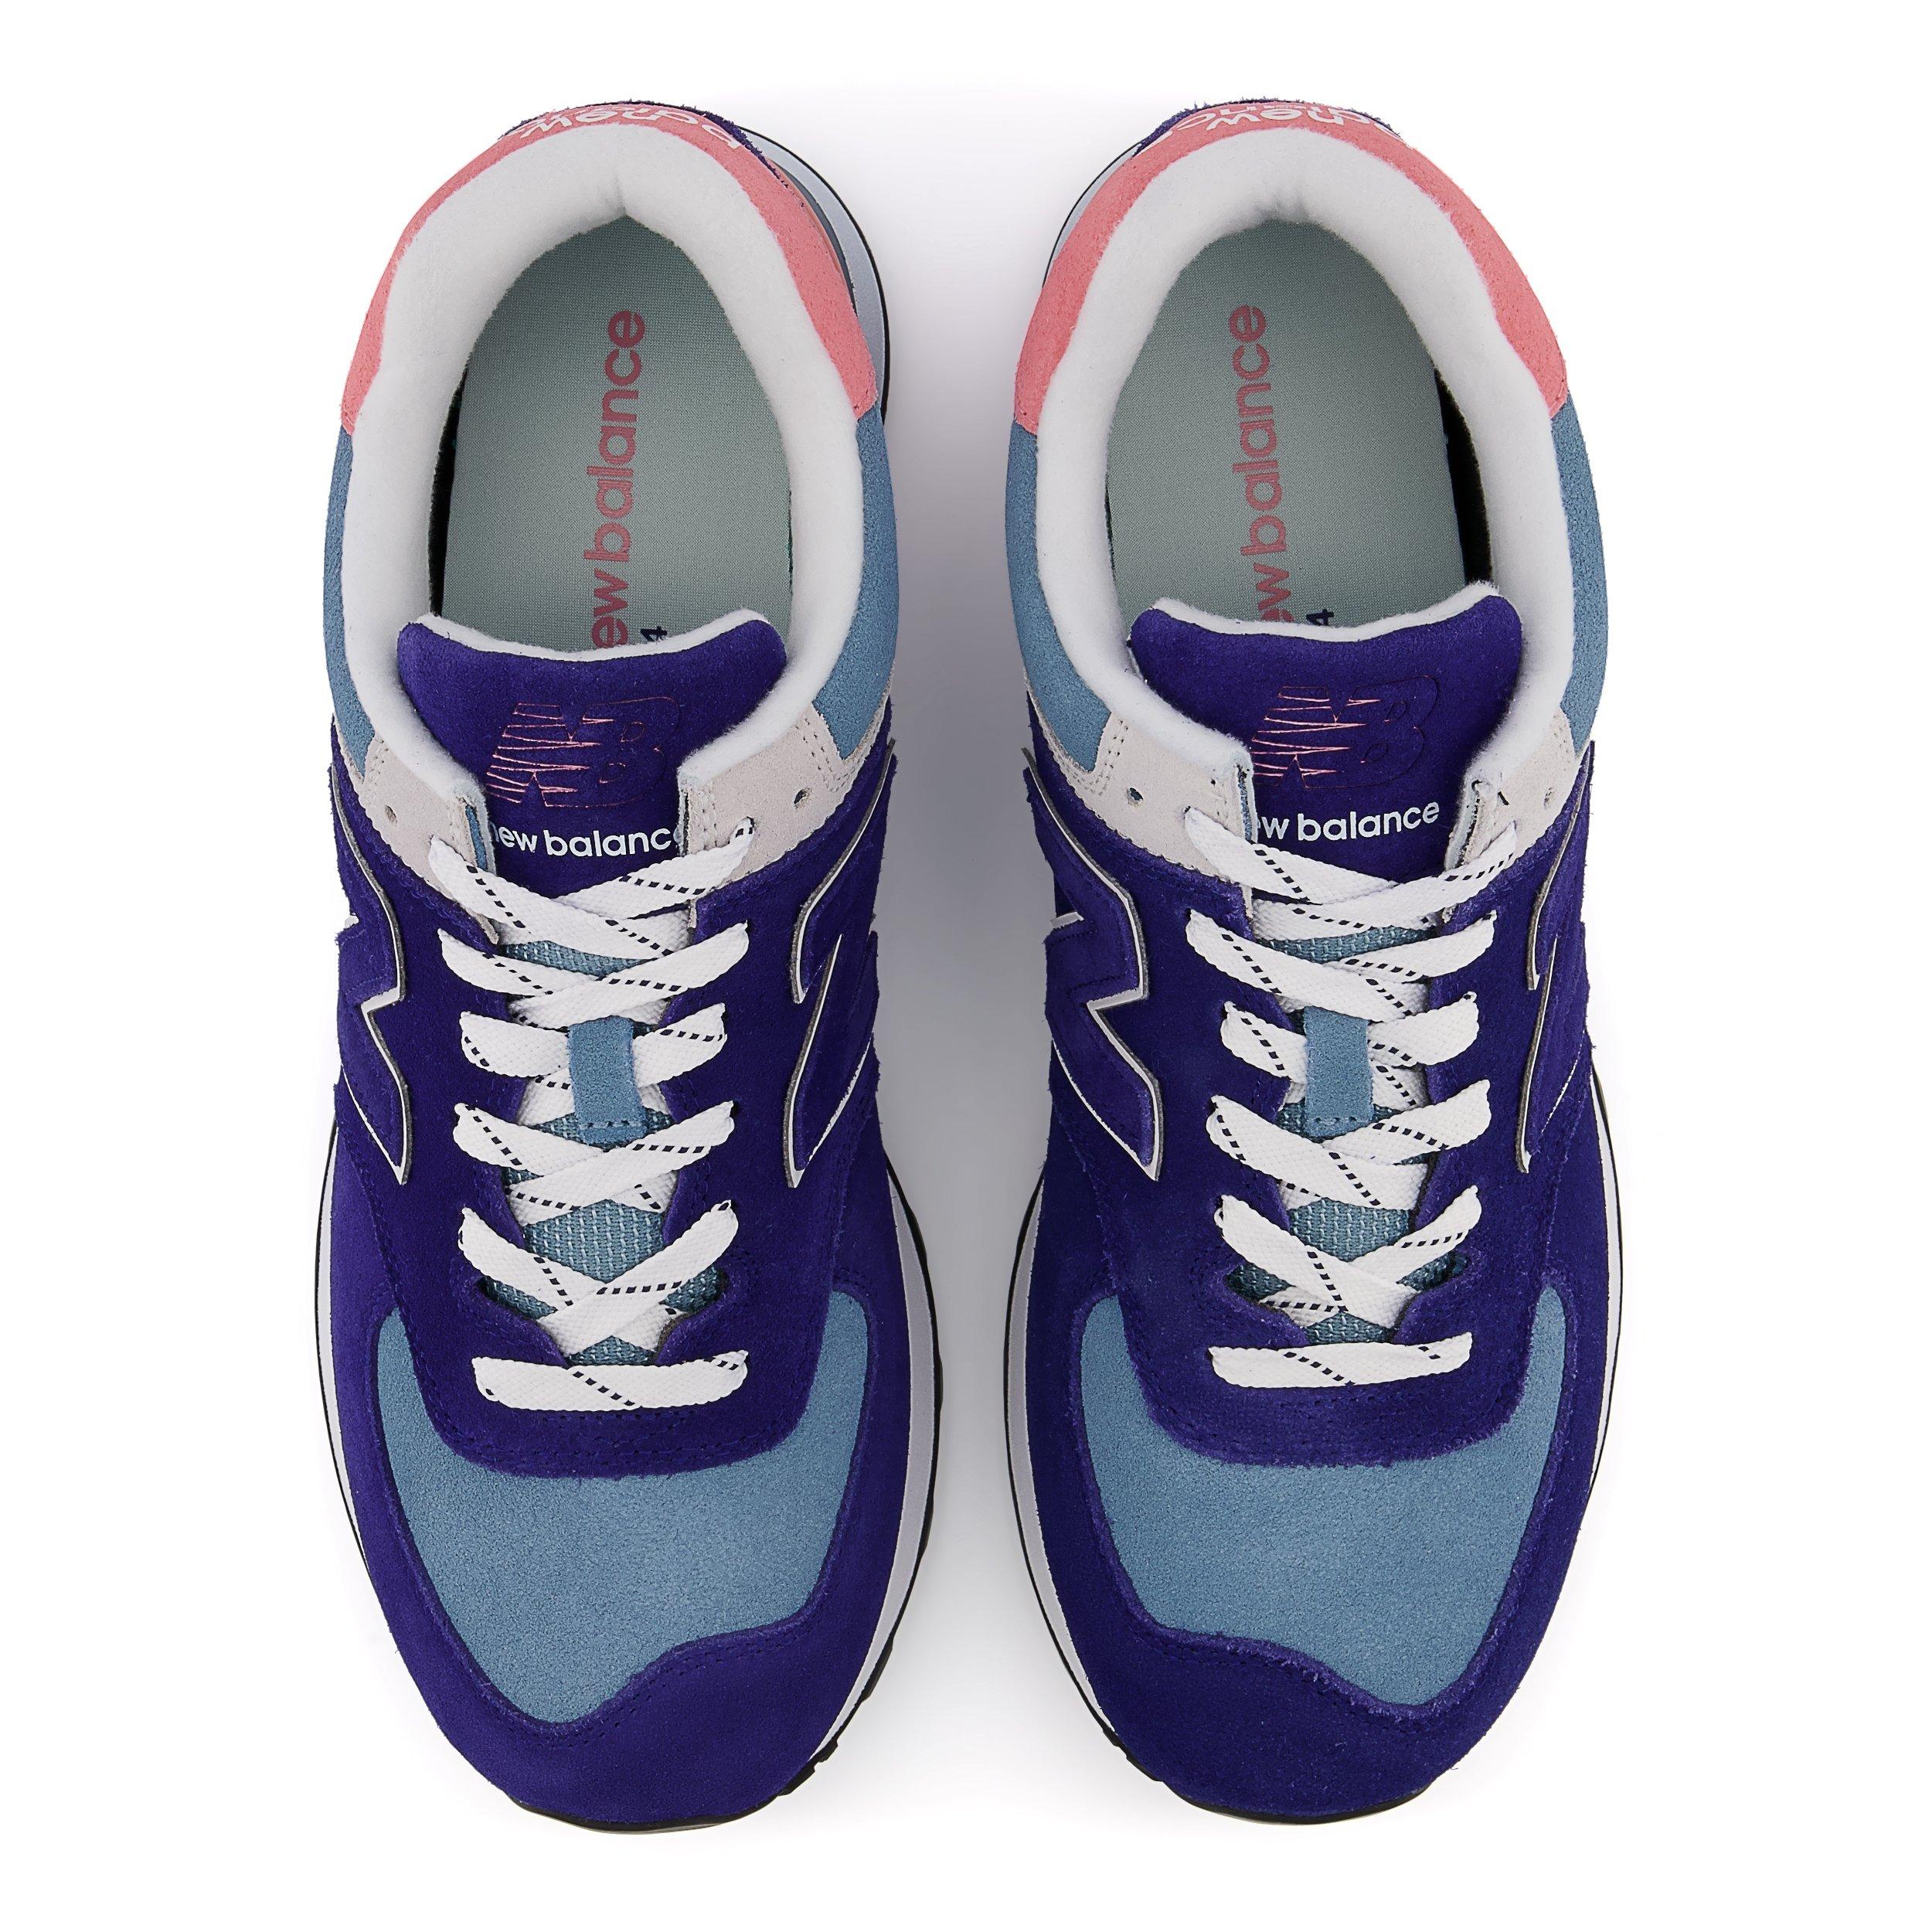 gloeilamp waarom niet druiven New Balance 574 "Navy/Blue/Pink" Men's Shoe